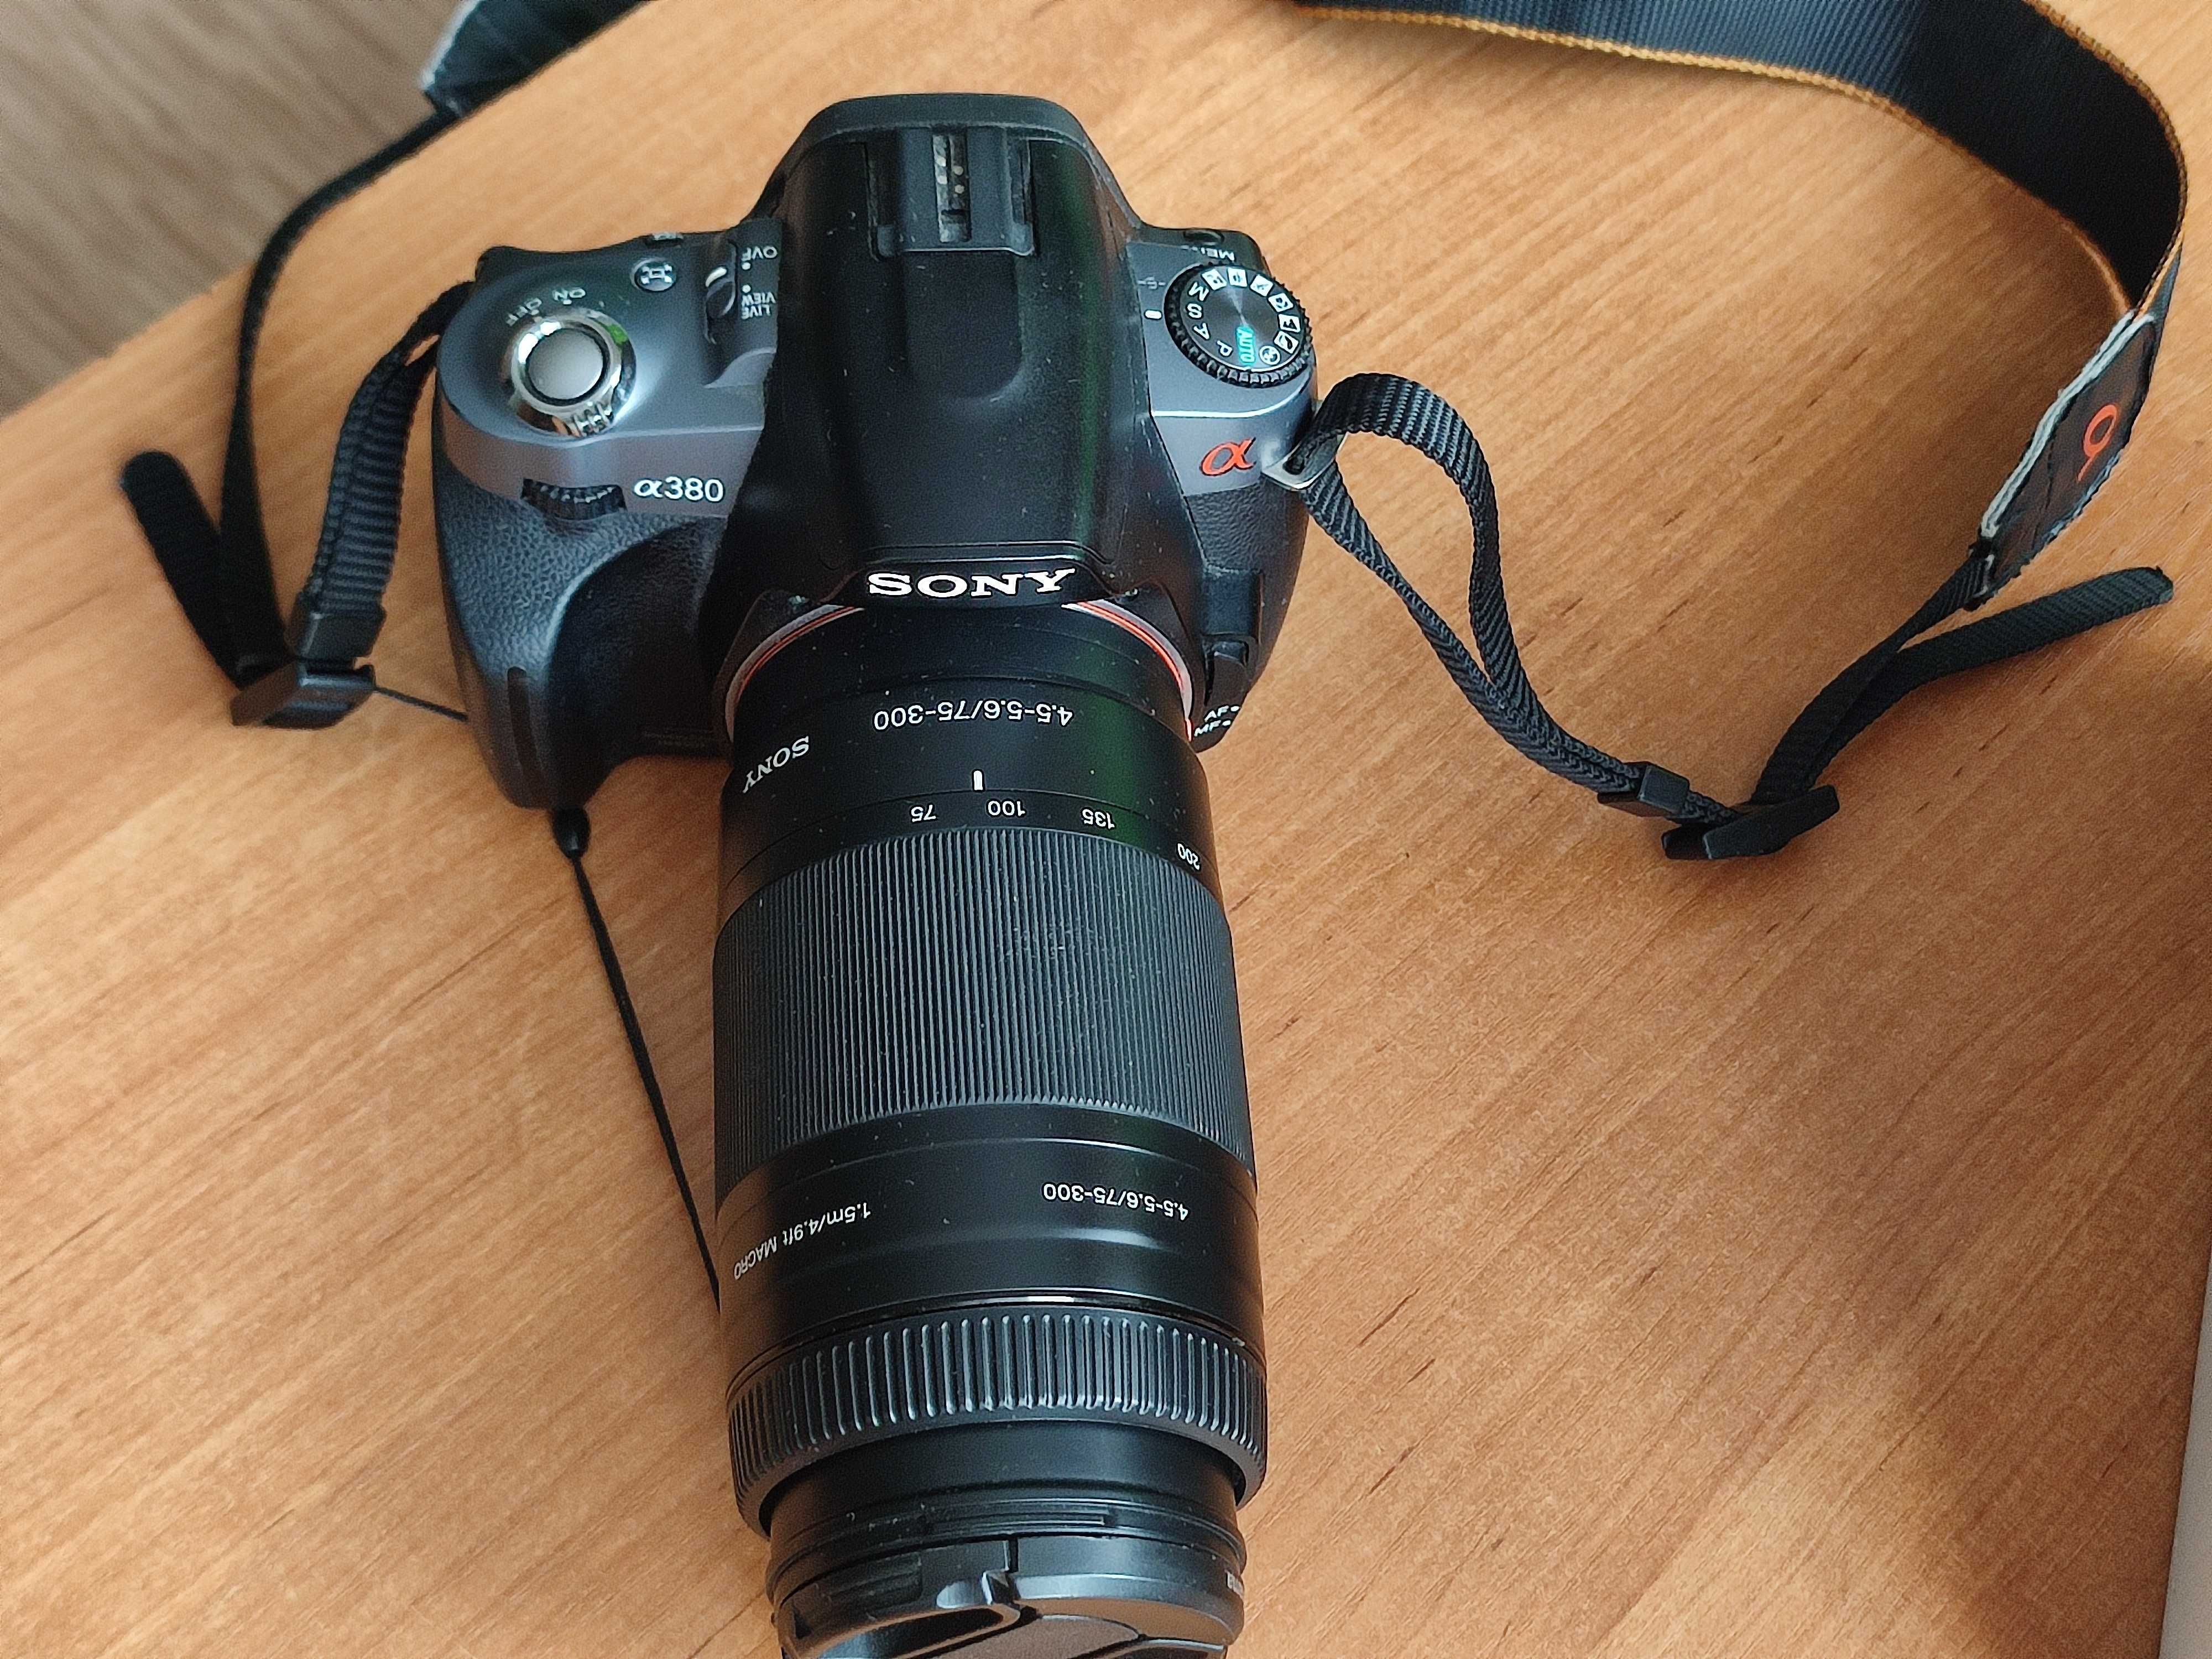 Lustrzanka Sony a380 zestaw + Obiektyw Sony 75-300mm, f/4.5-5.6